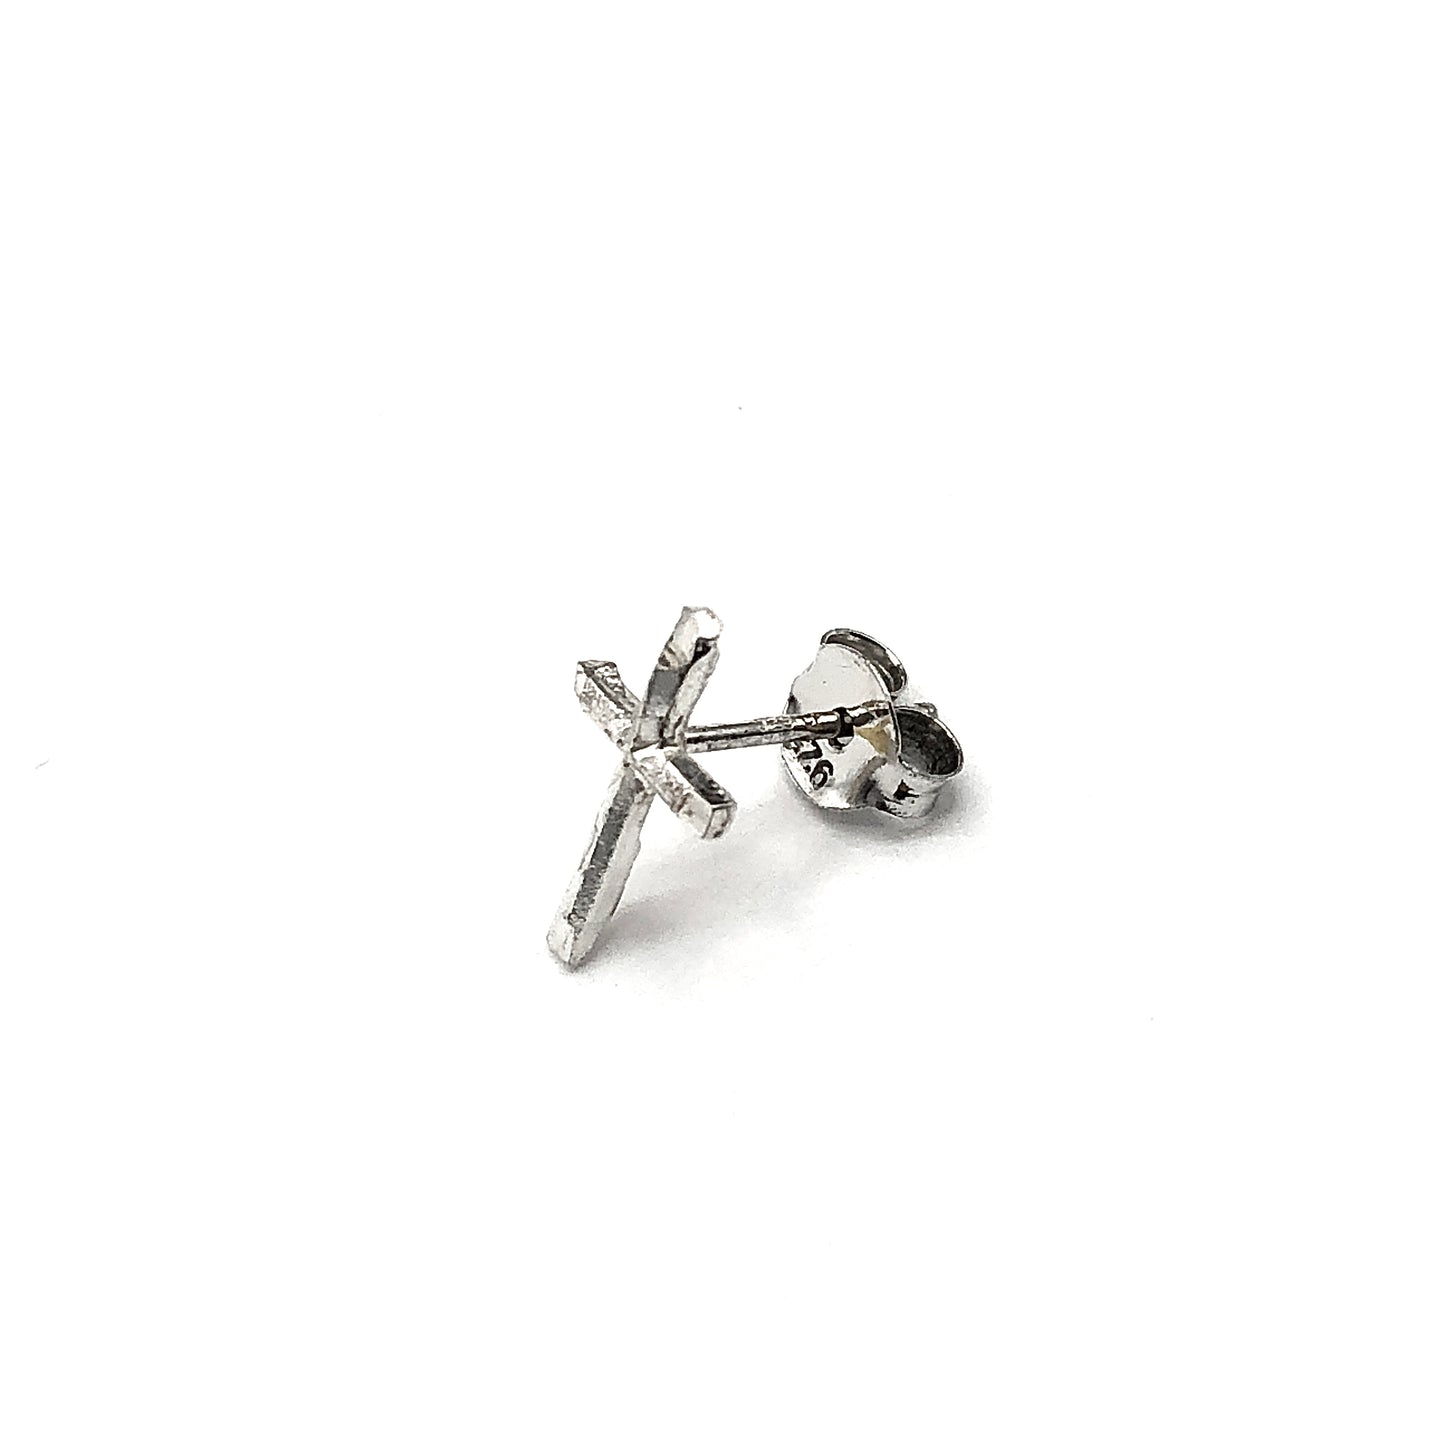 Single Earring - Mens Womens Sterling Silver Tiny Cross Stud Earring